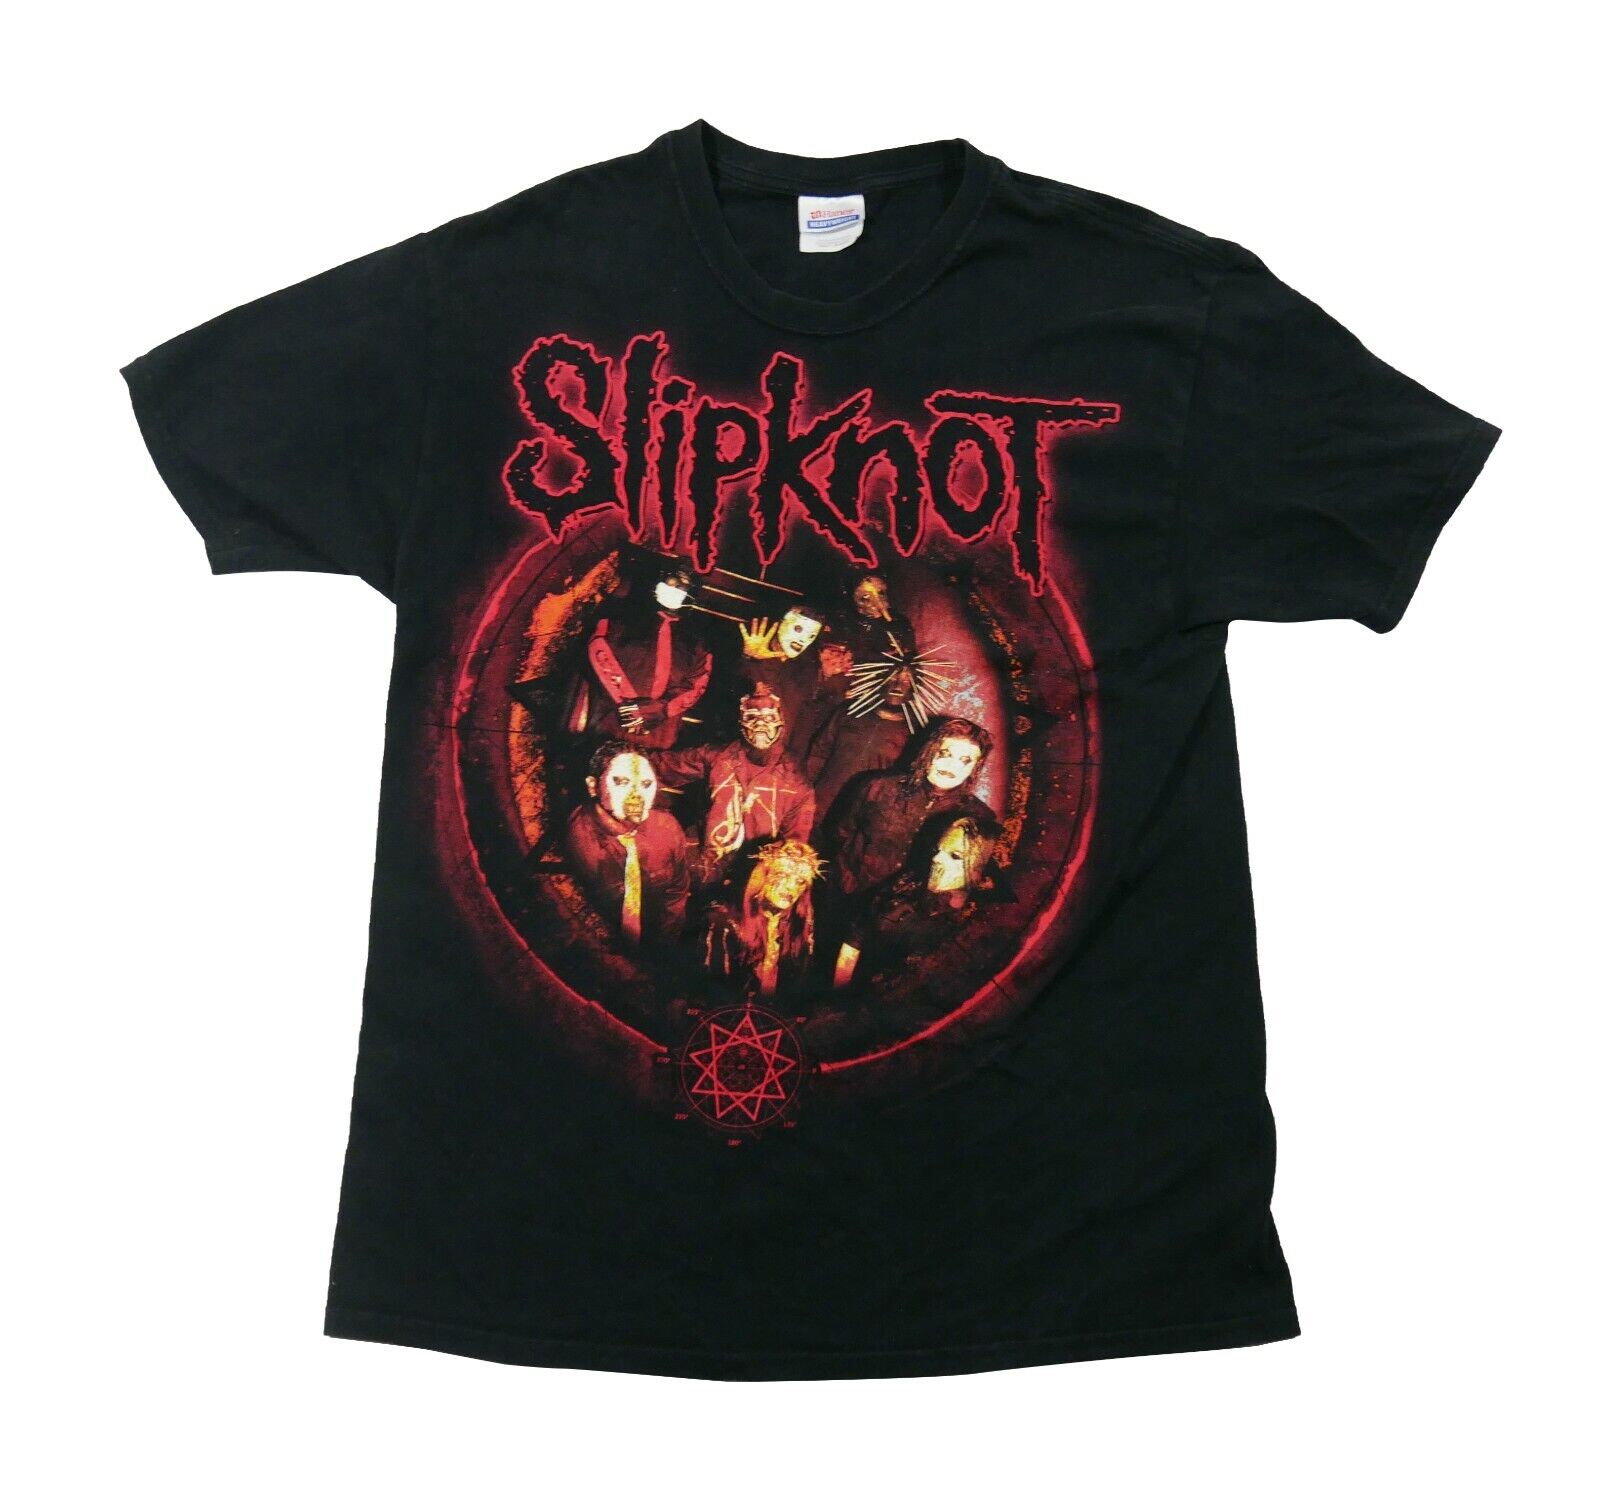 Slipknot T-Shirt Black Size L 2000s